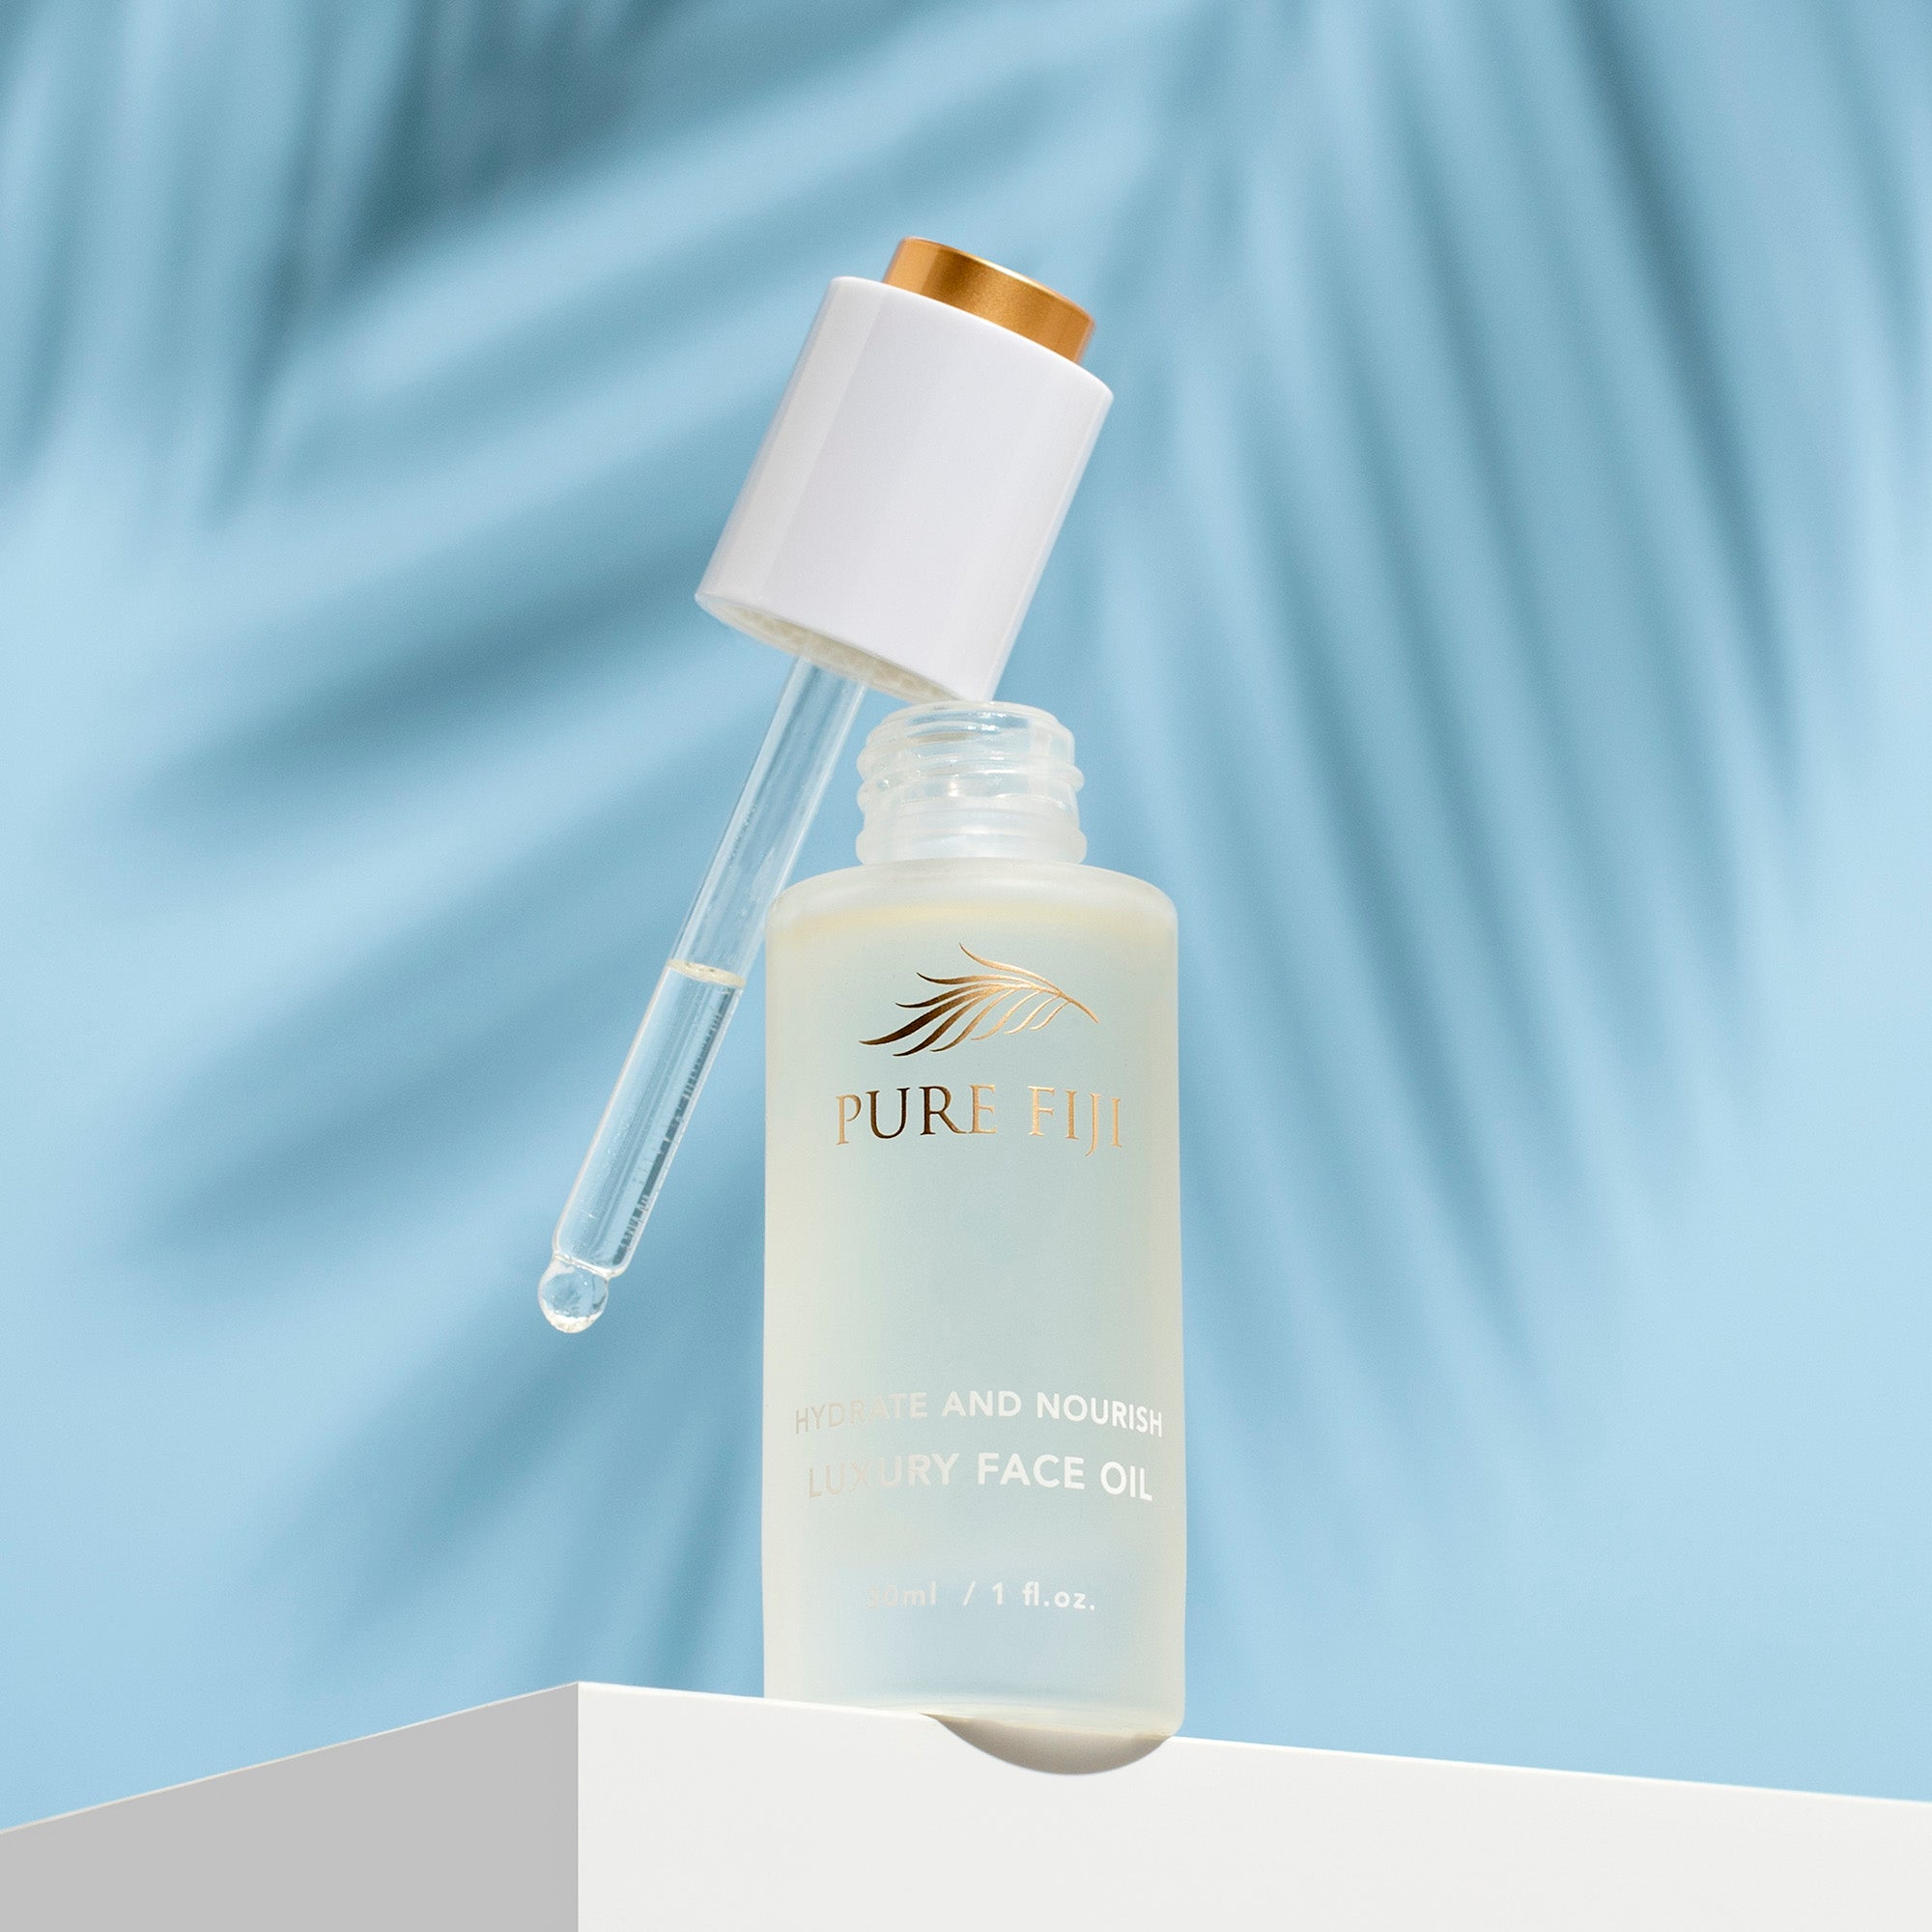 Pure Fiji Hydrate & Nourish Luxury Face Oil